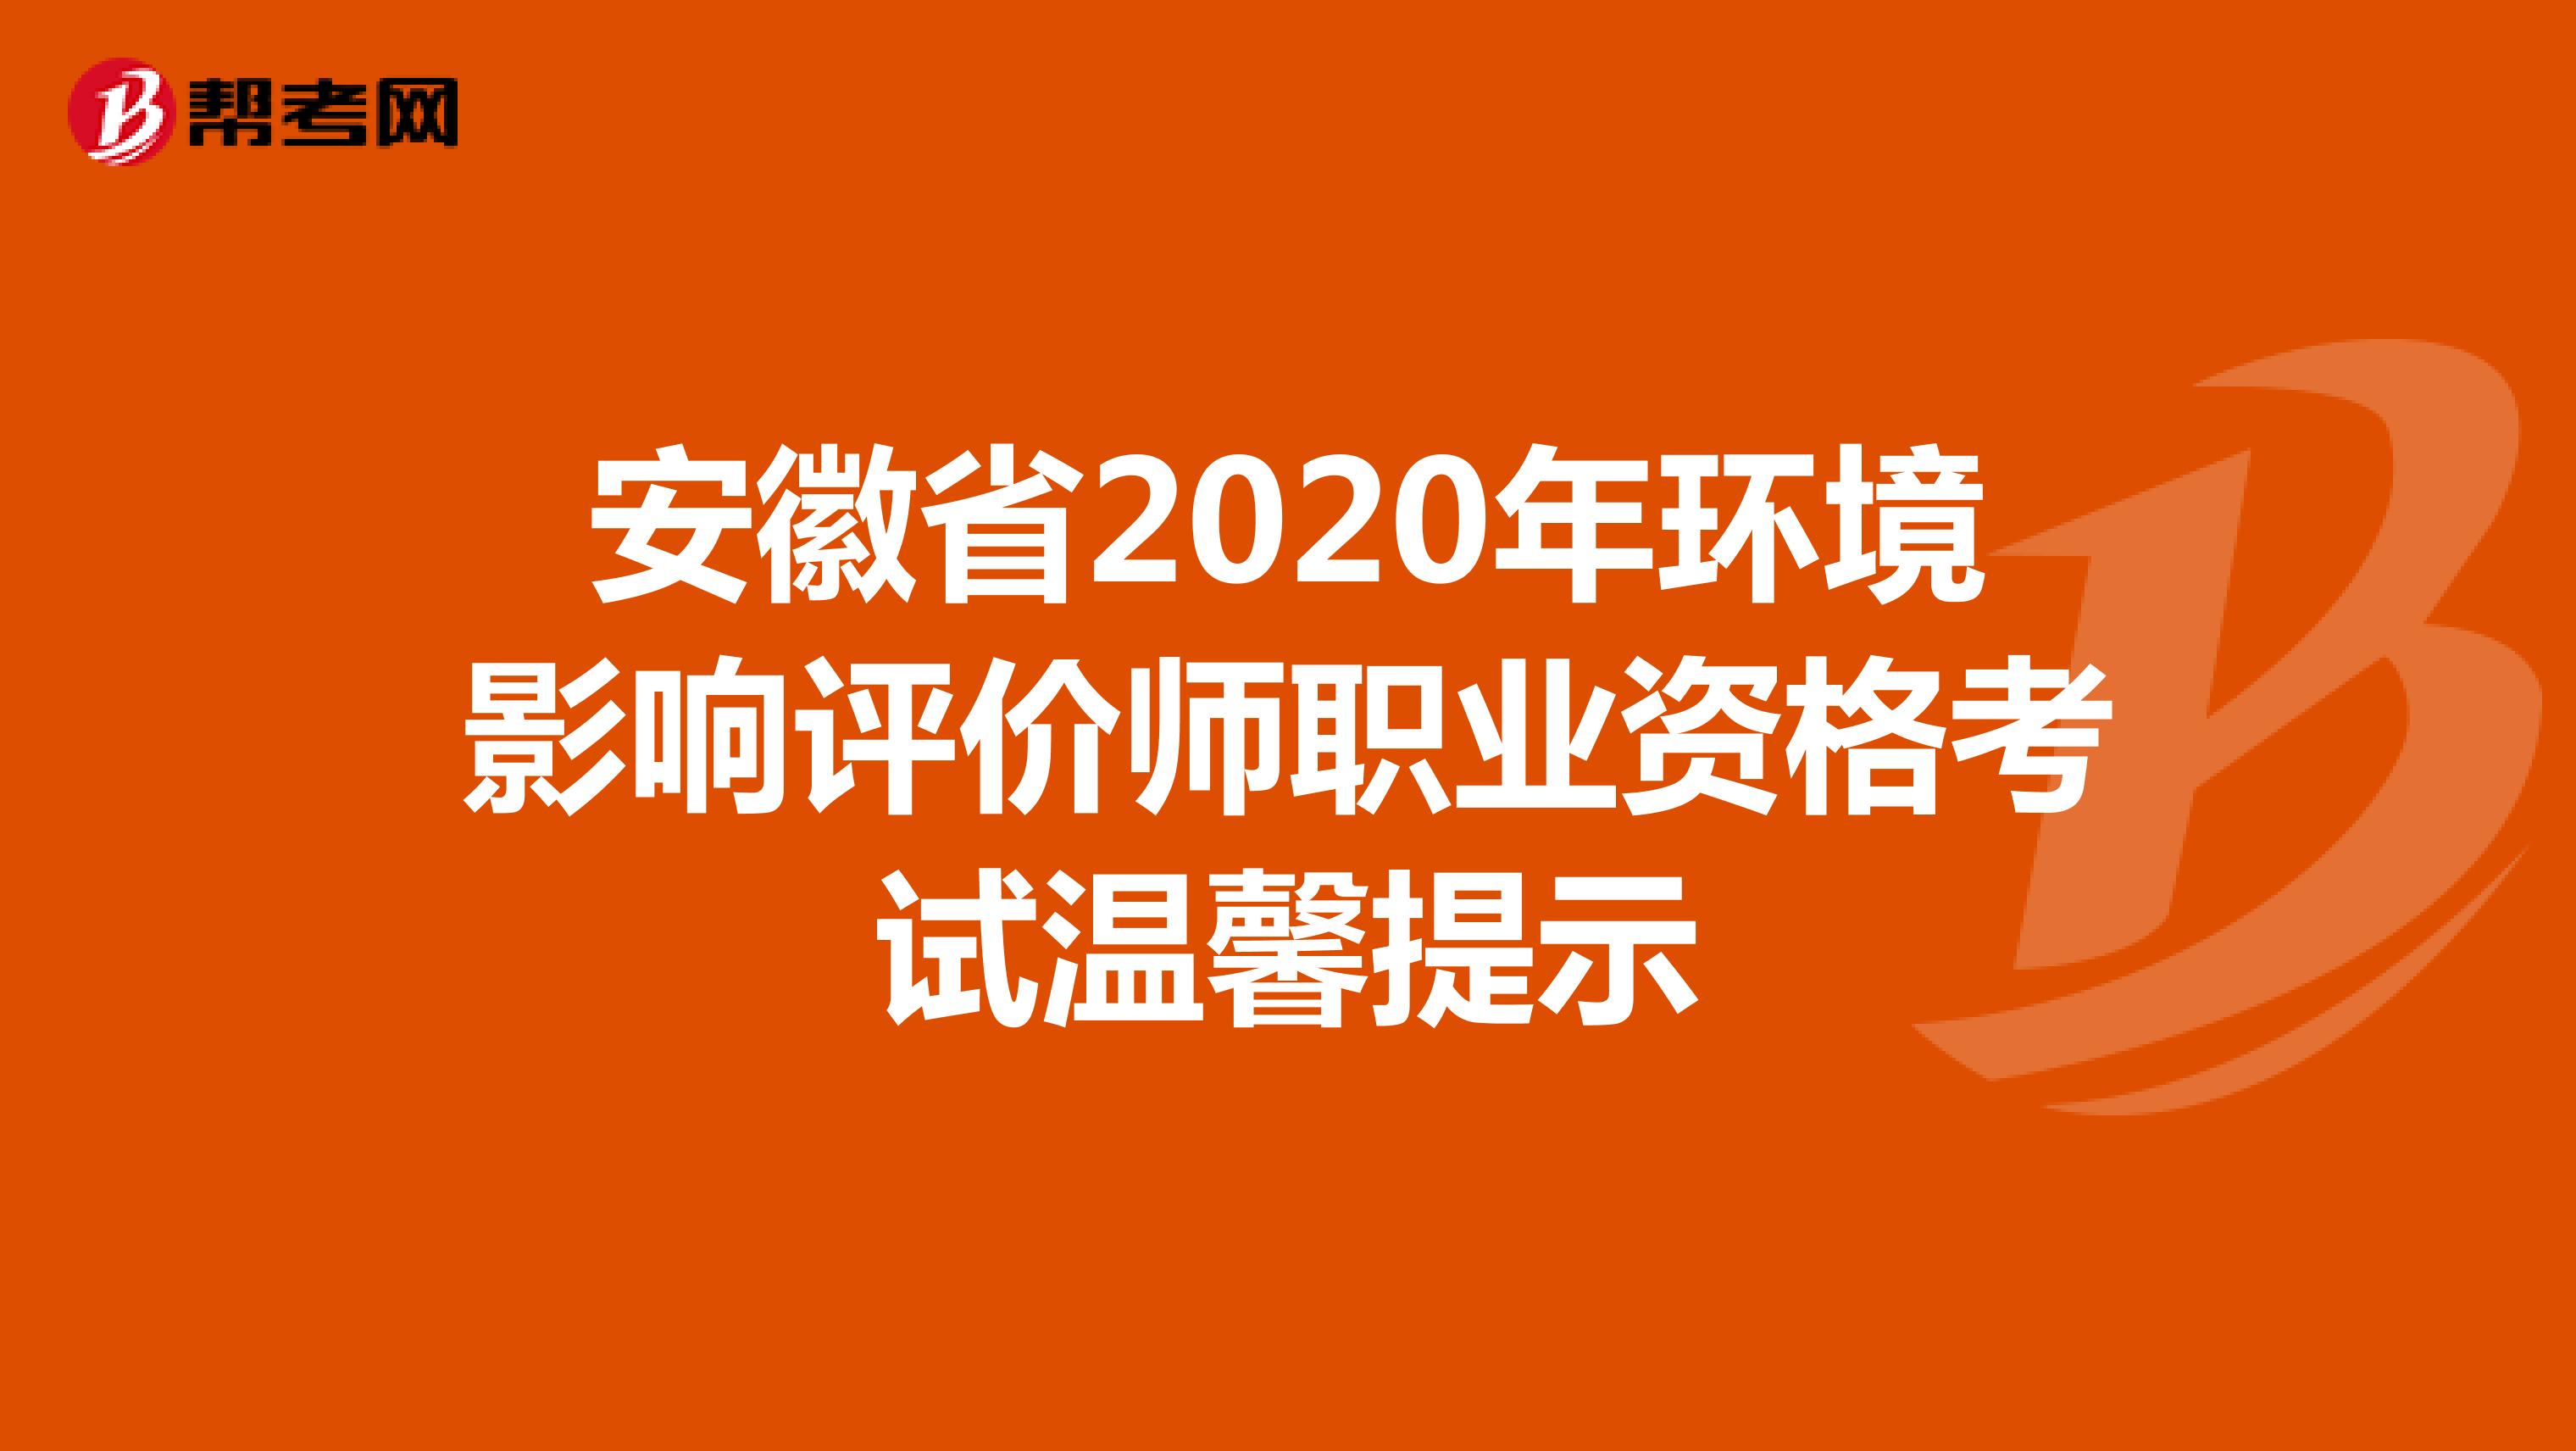 安徽省2020年环境影响评价师职业资格考试温馨提示